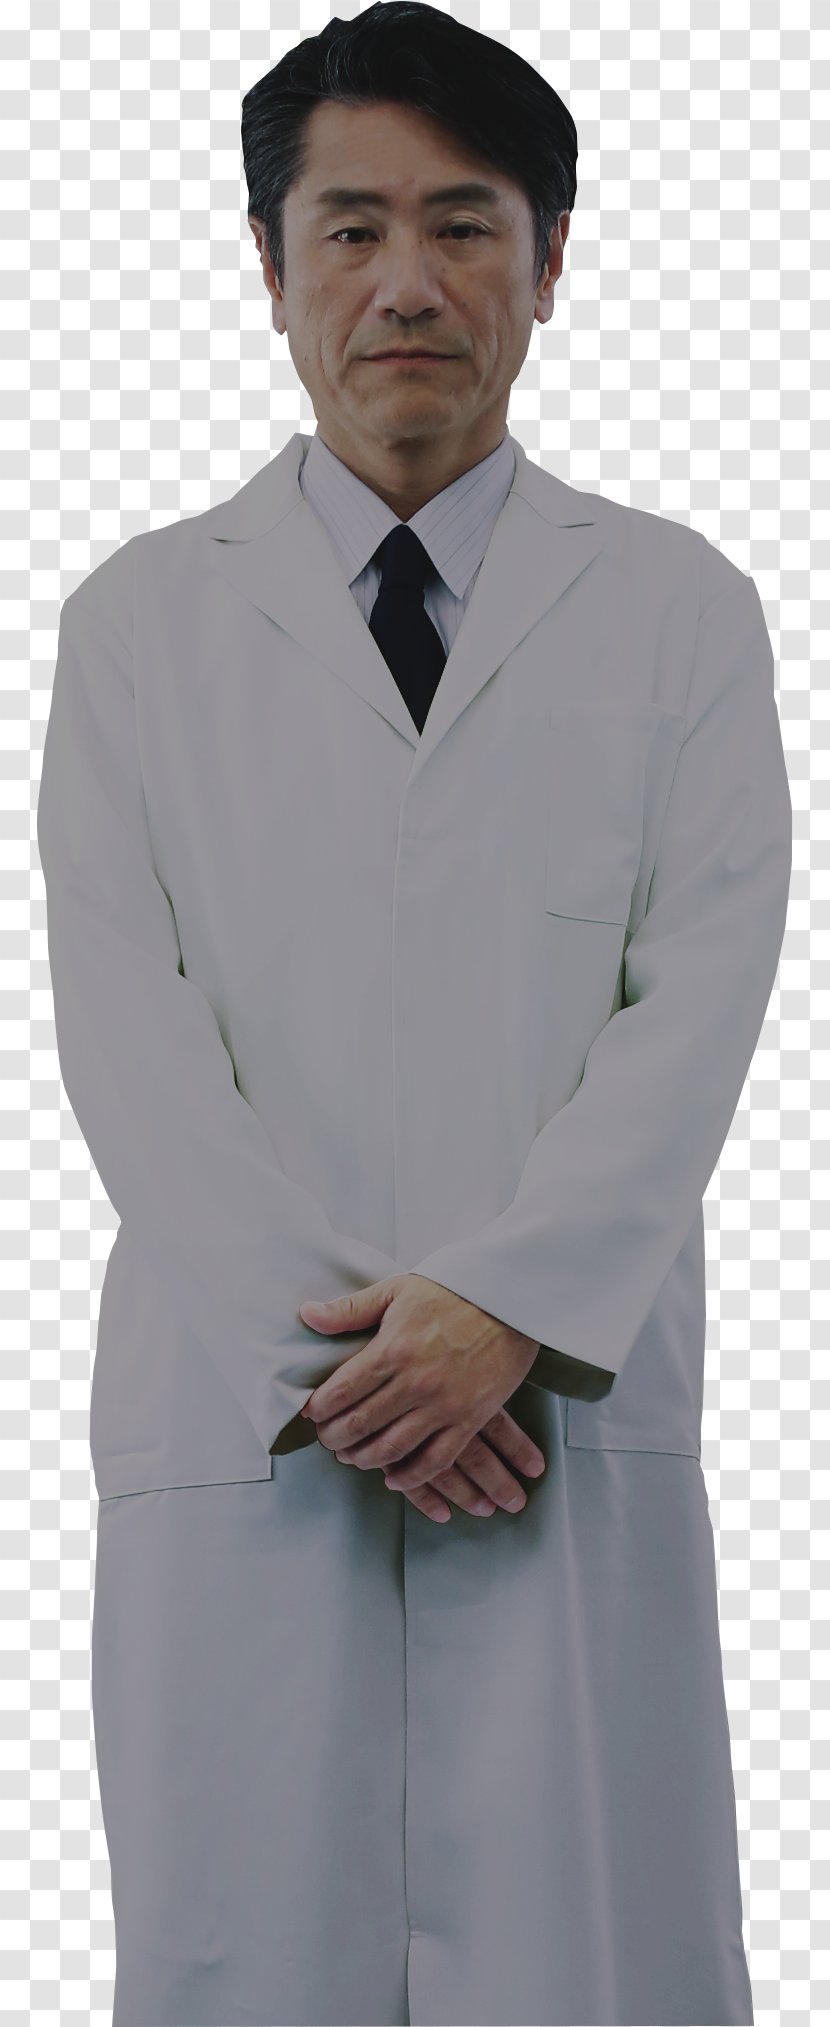 Tuxedo Chef's Uniform White-collar Worker Laborer Blazer - Whitecollar - Lab Transparent PNG